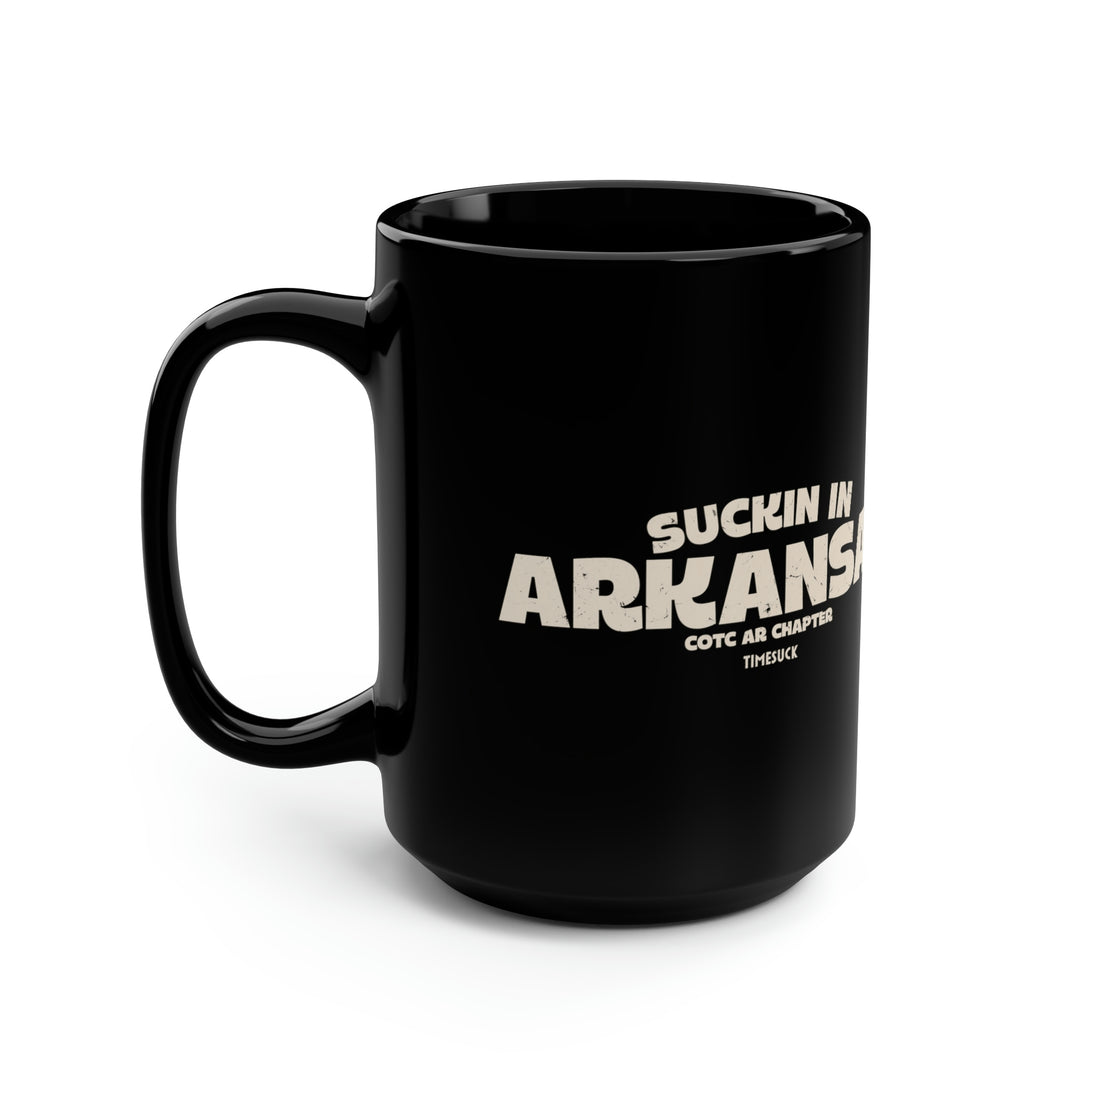 Arkansas Cult Mug